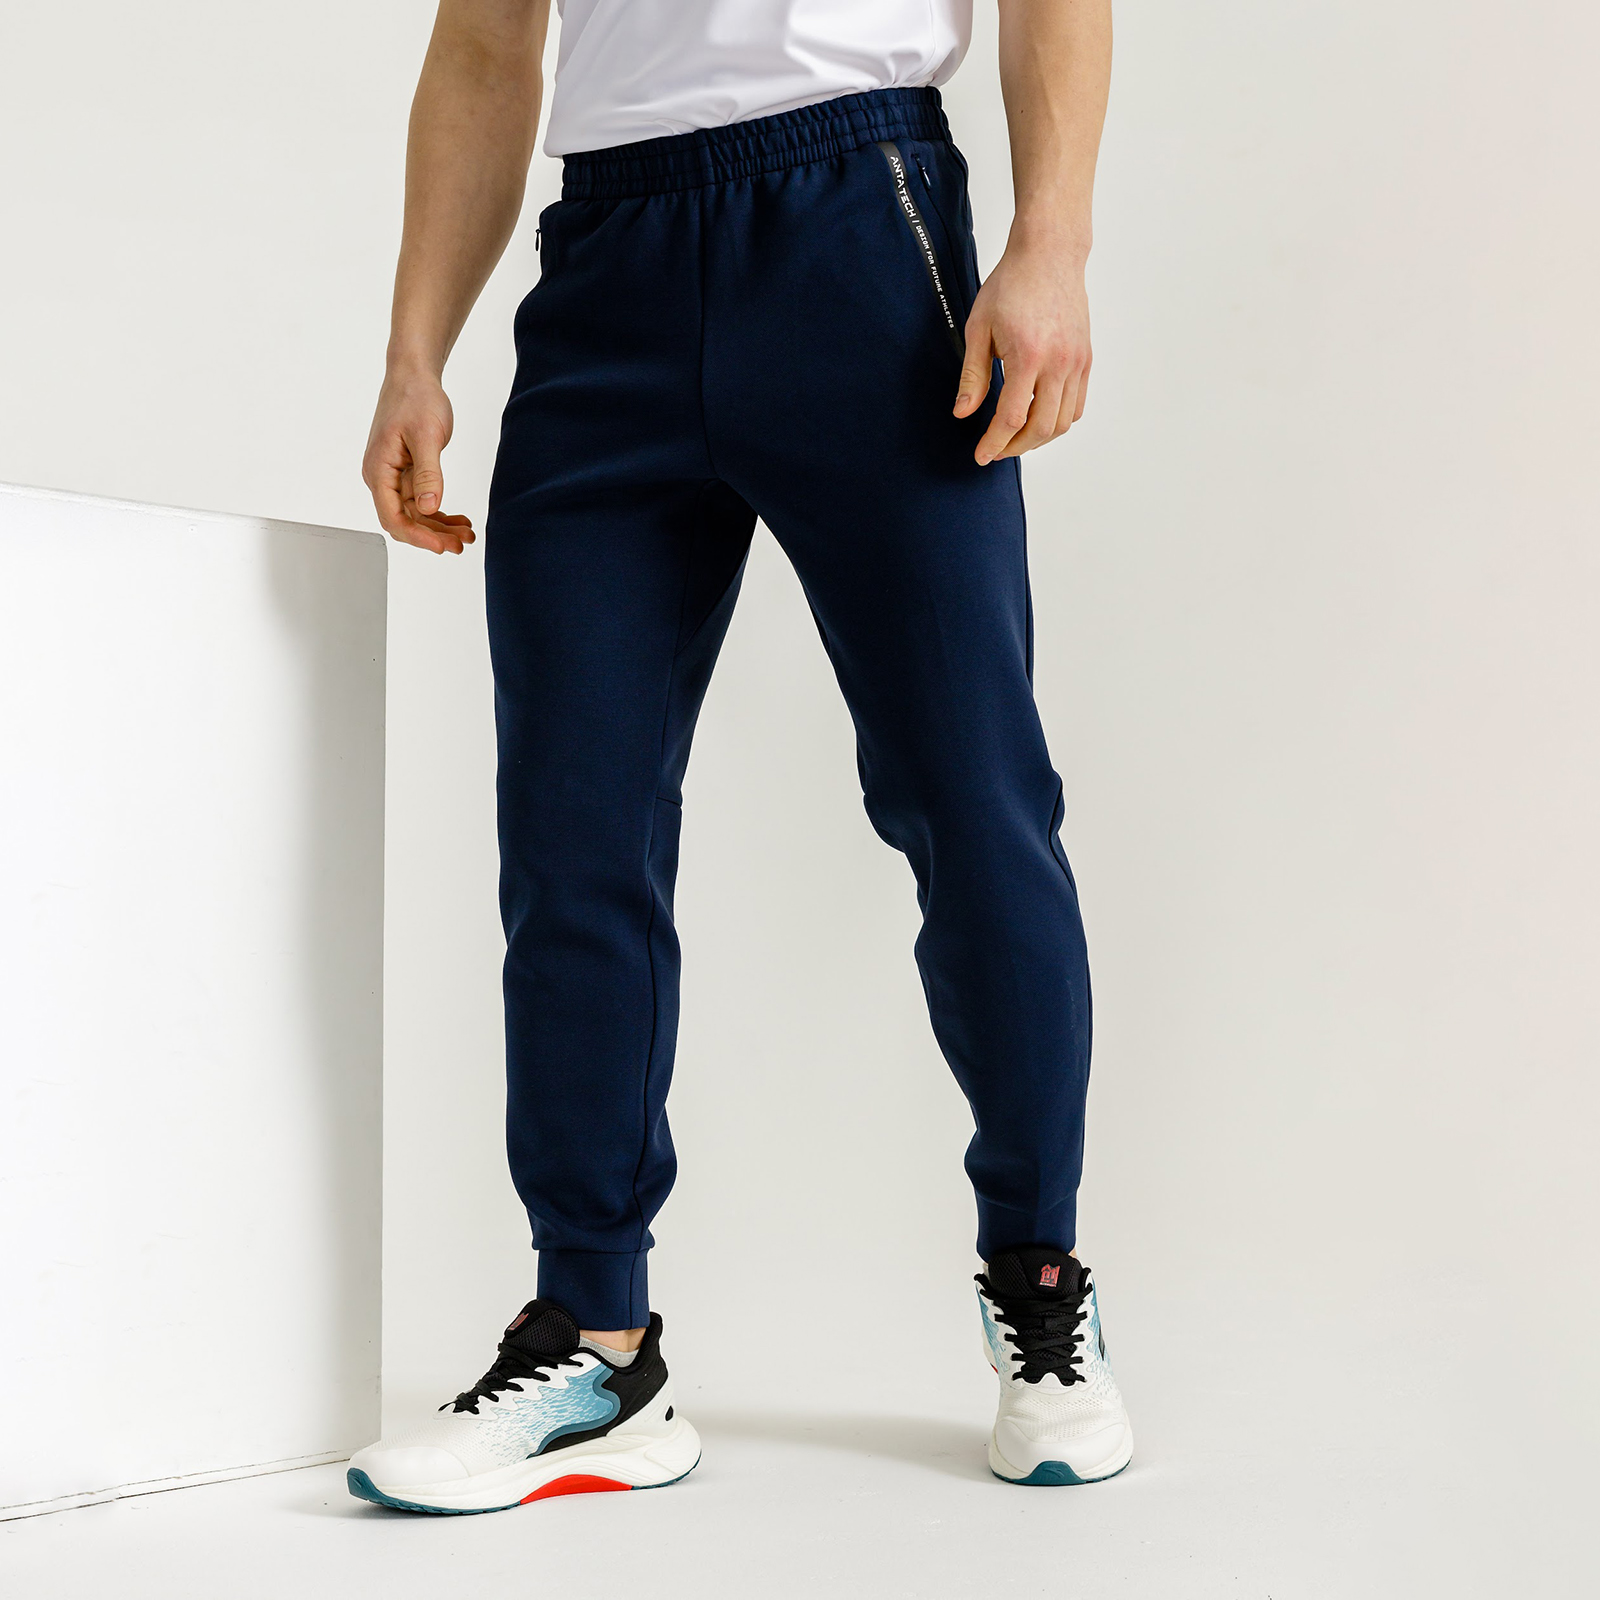 Мужские брюки и шорты – купить в официальном интернет-магазине TrendZoneМосква, Спб, Россия